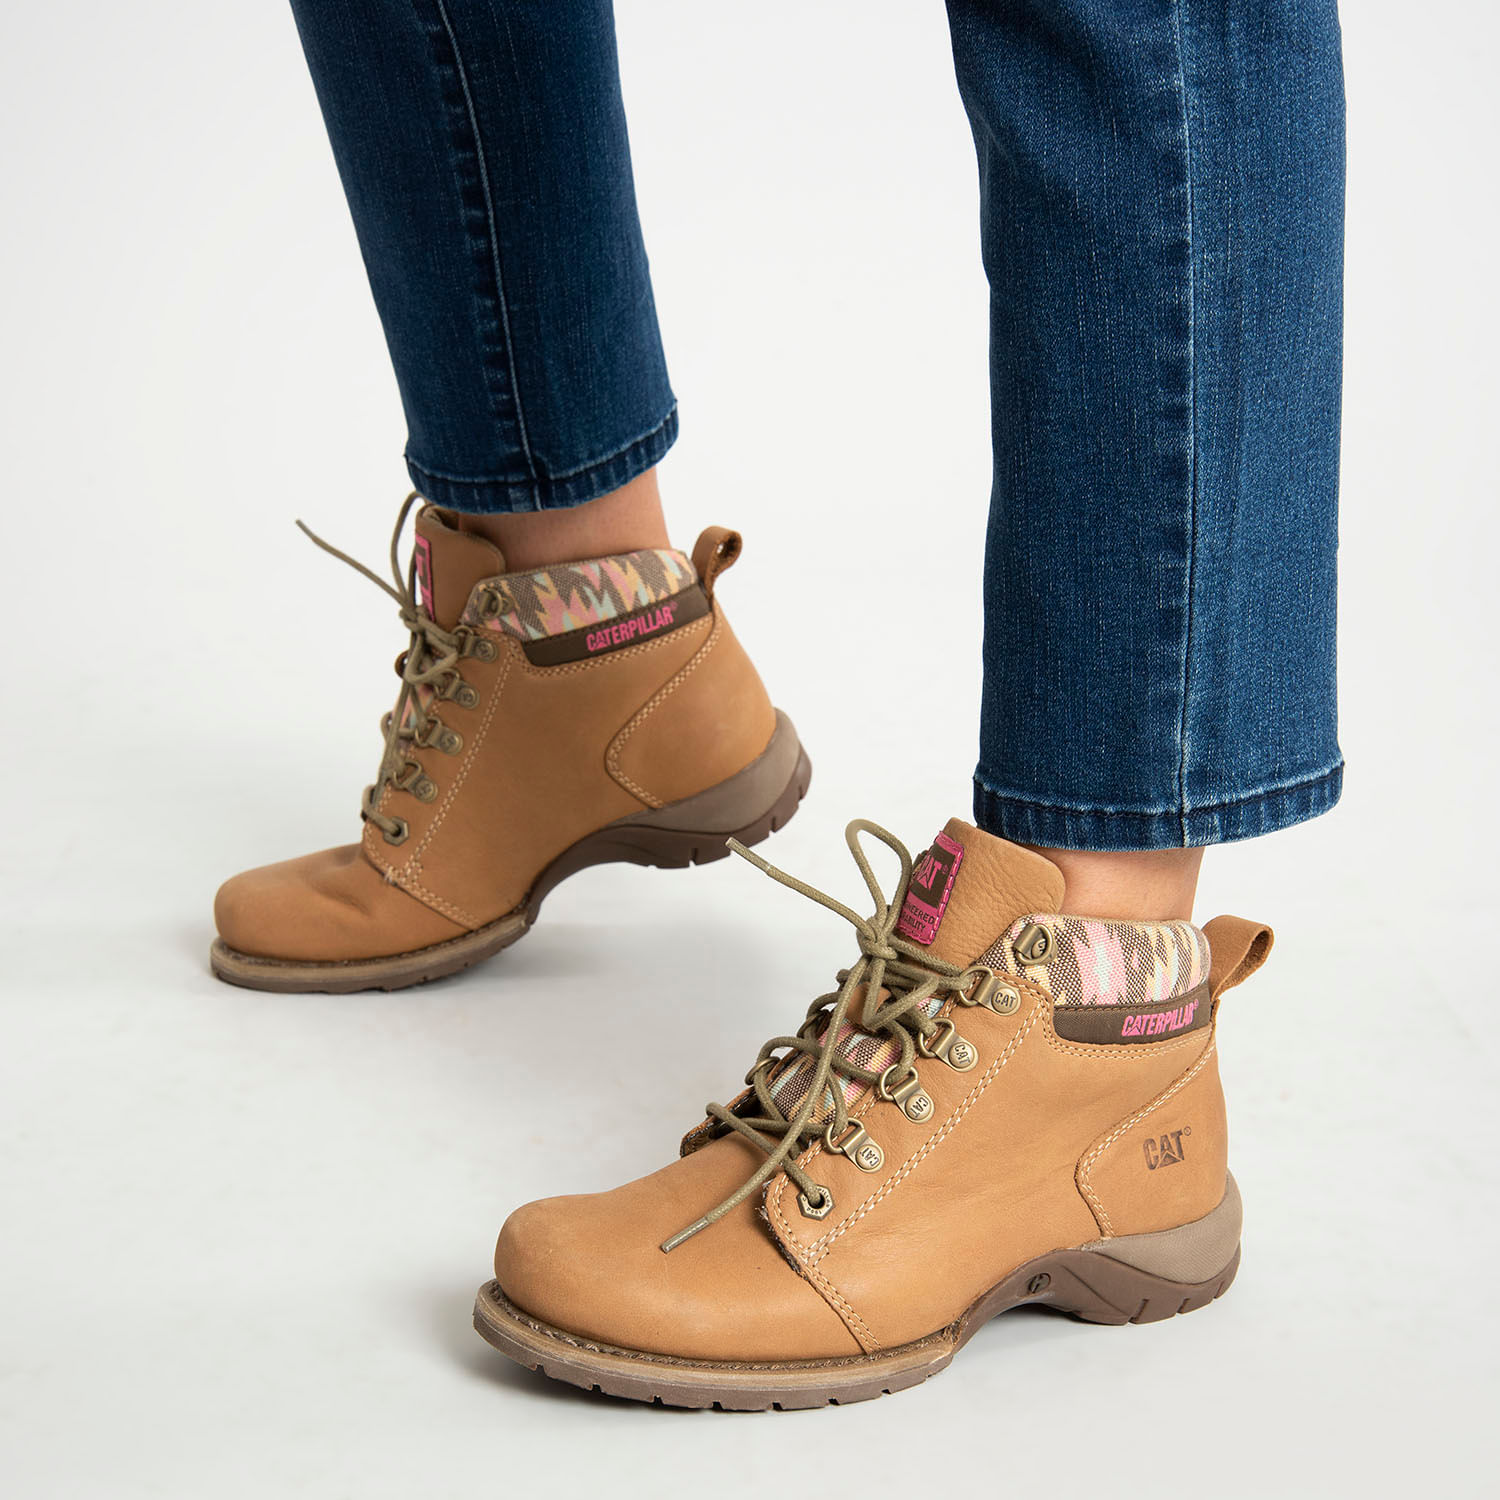 Botín Mujer - Zapatos.cl Sitio Oficial - Encuentra Vestuario, Calzado y más